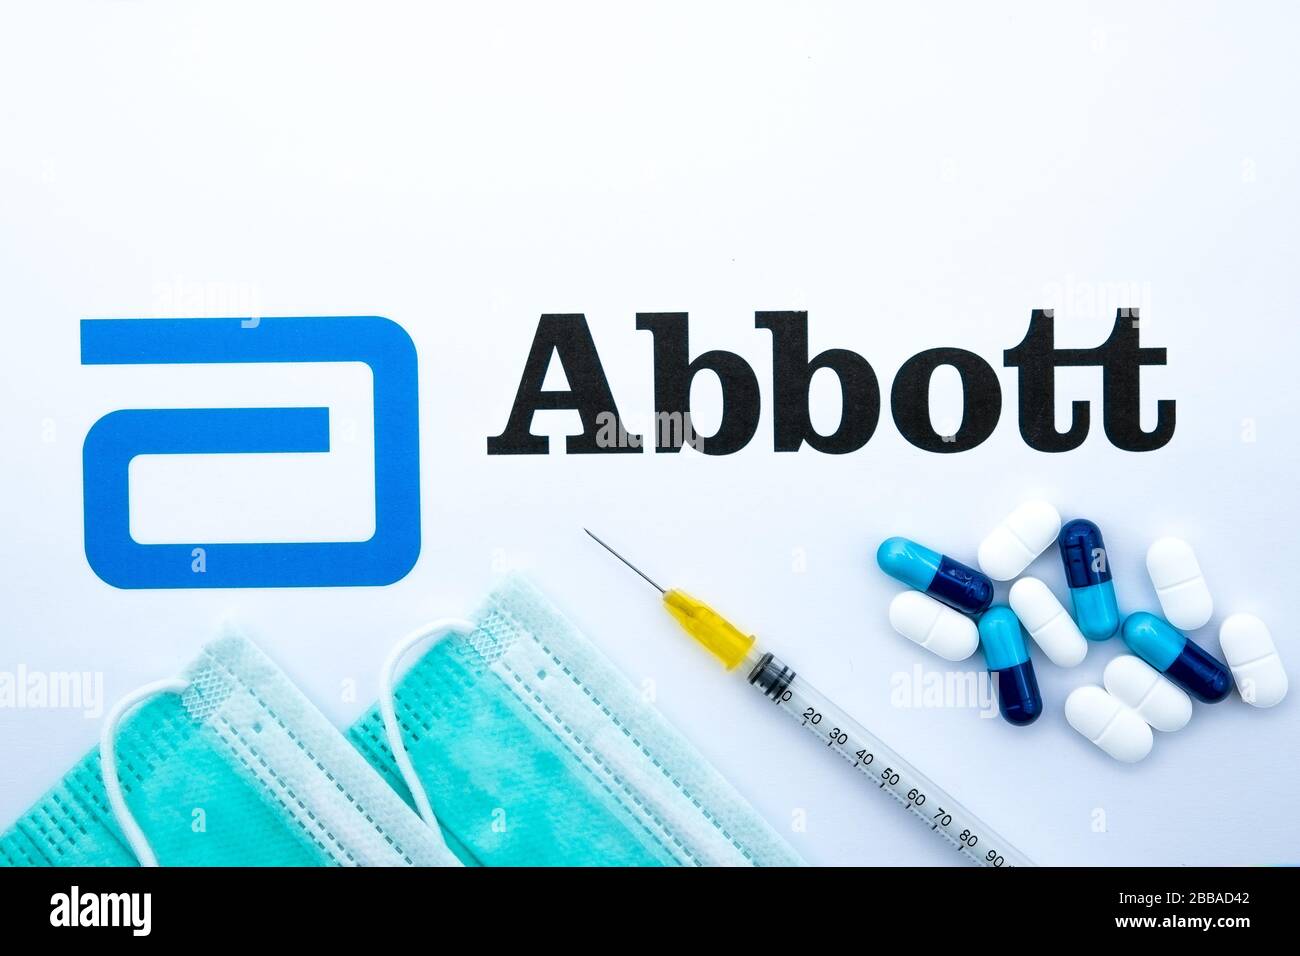 Stone / Regno Unito - 30 marzo 2020: Logo Abbott stampato come brochure e maschere virali sopra di esso con siringa e pillole. Concetto per coronavirus Foto Stock